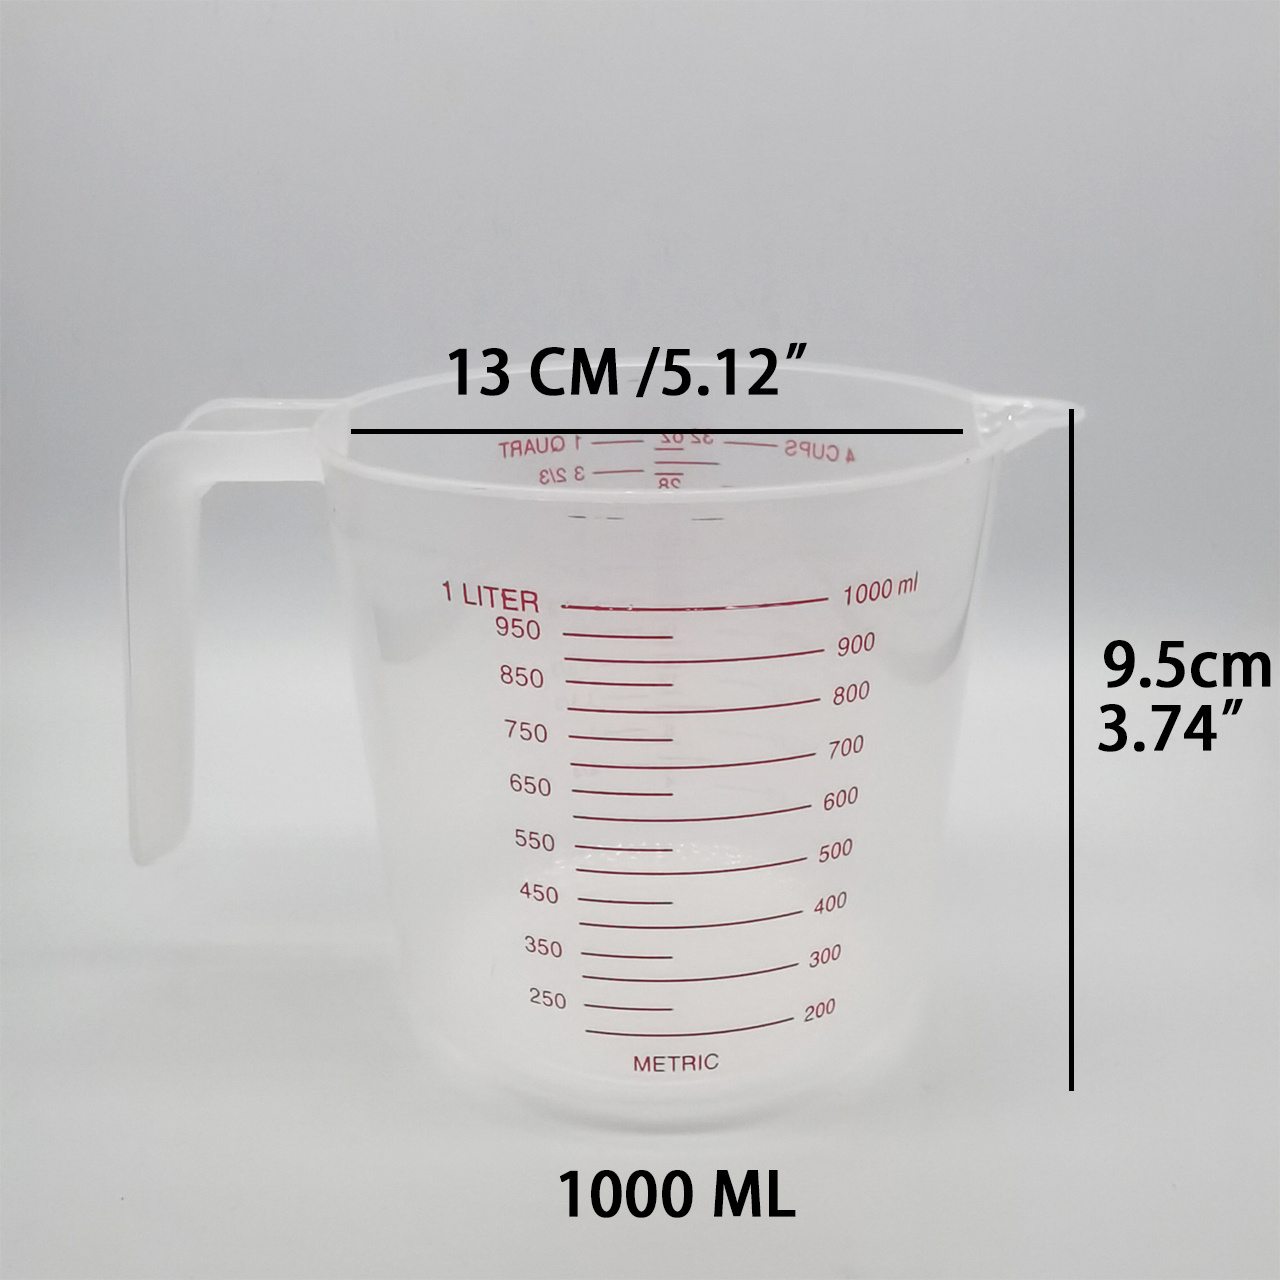 Transpac Ceramic 6.25 In. Stacking Measuring Cups Set Of 4 : Target